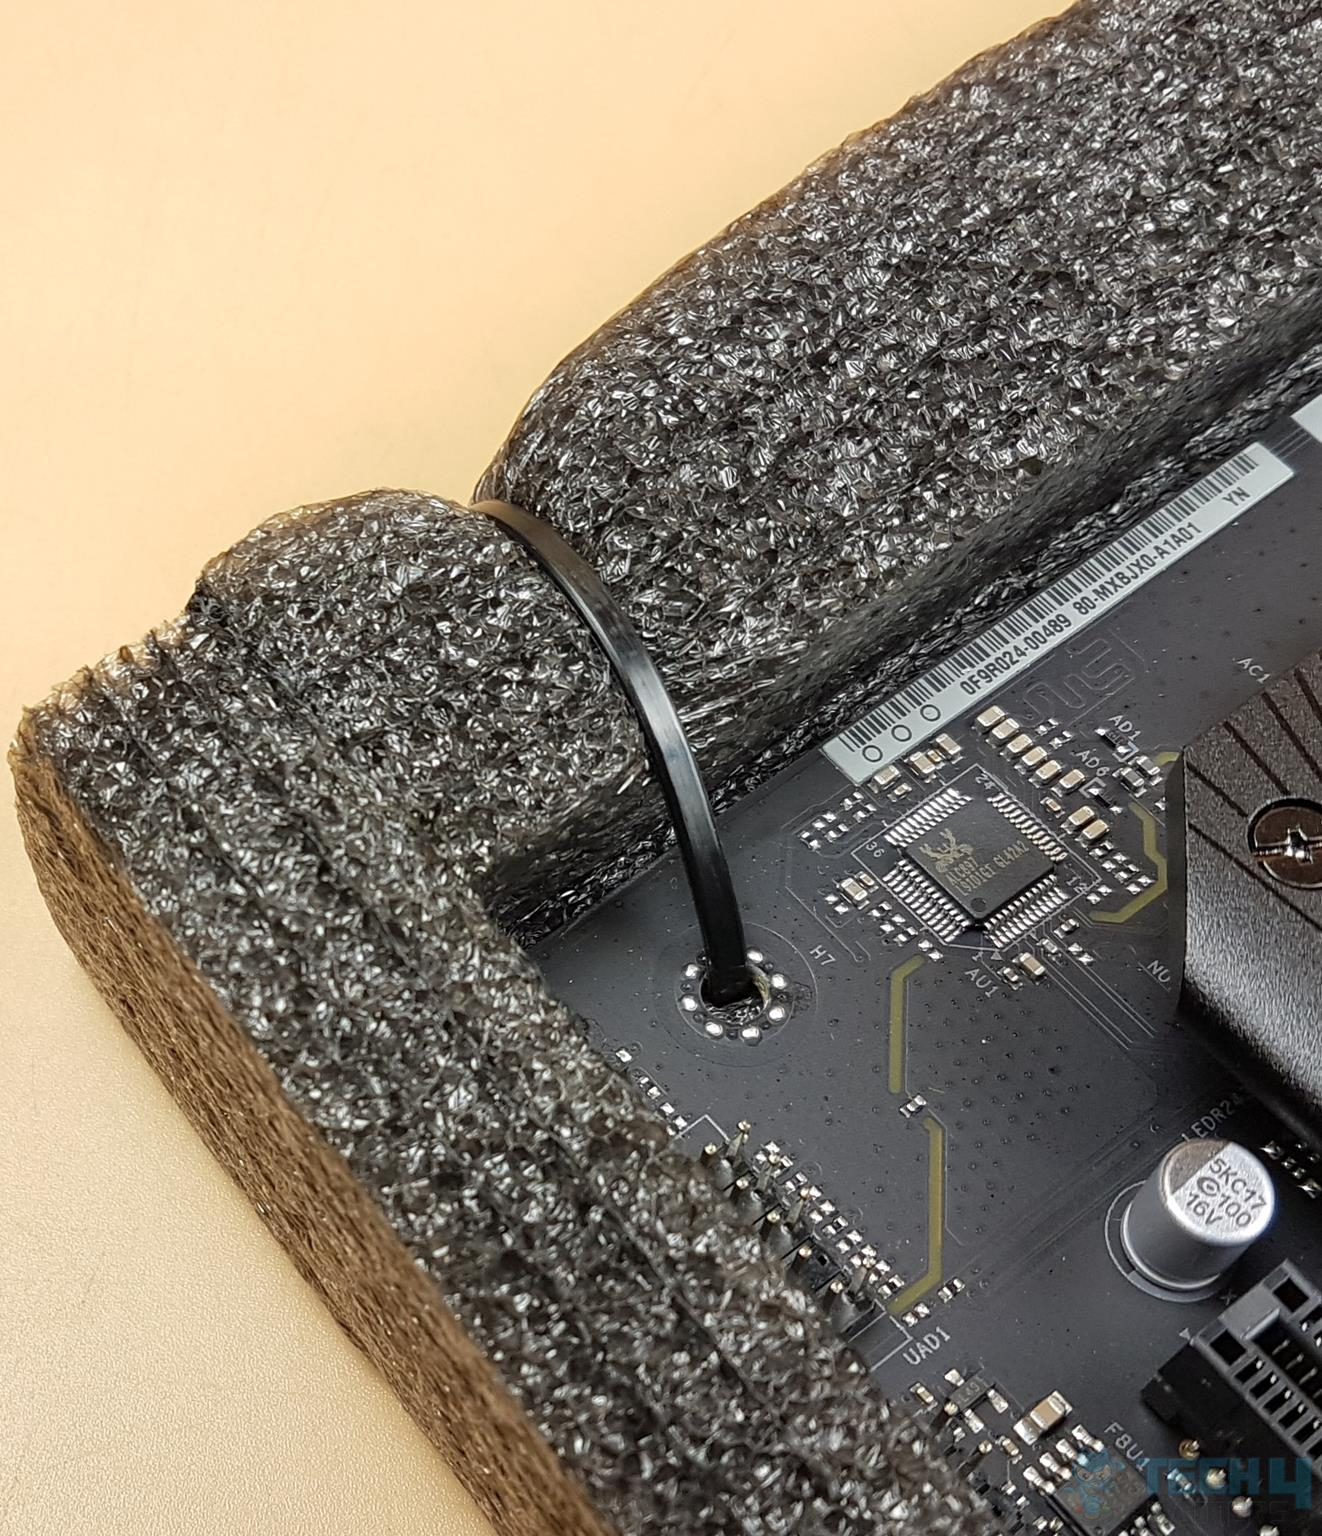 ASRock Z790 PG Riptide — Zip Ties to secure the motherboard